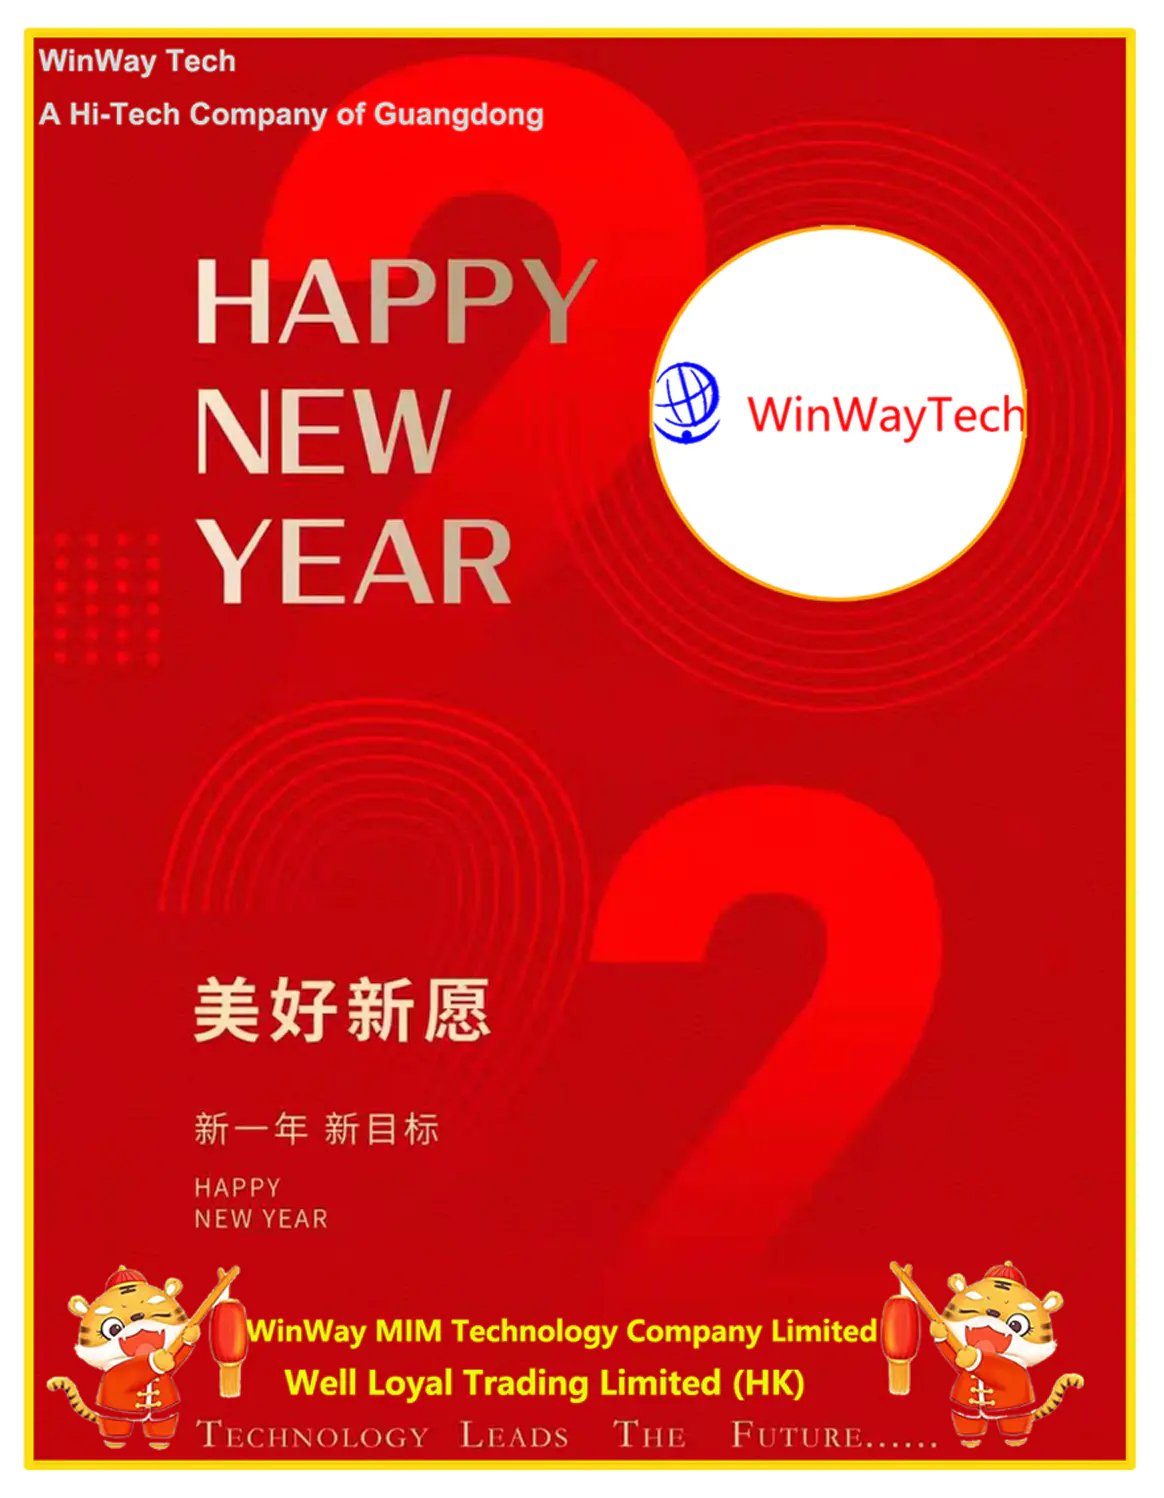 WinWay Tech признана высокотехнологичной компанией